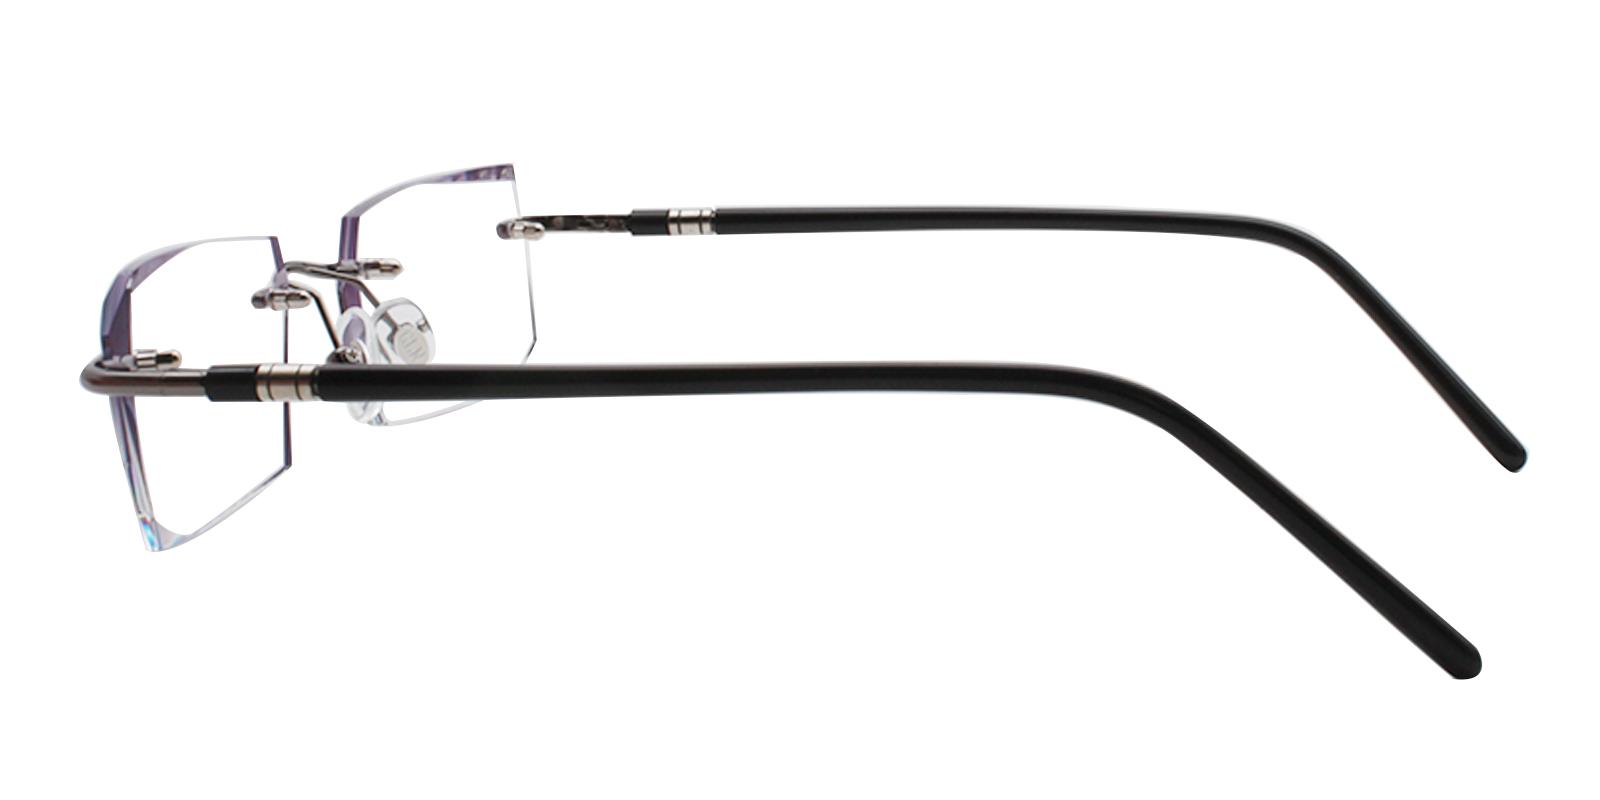 Asher Gray Titanium NosePads , Eyeglasses Frames from ABBE Glasses